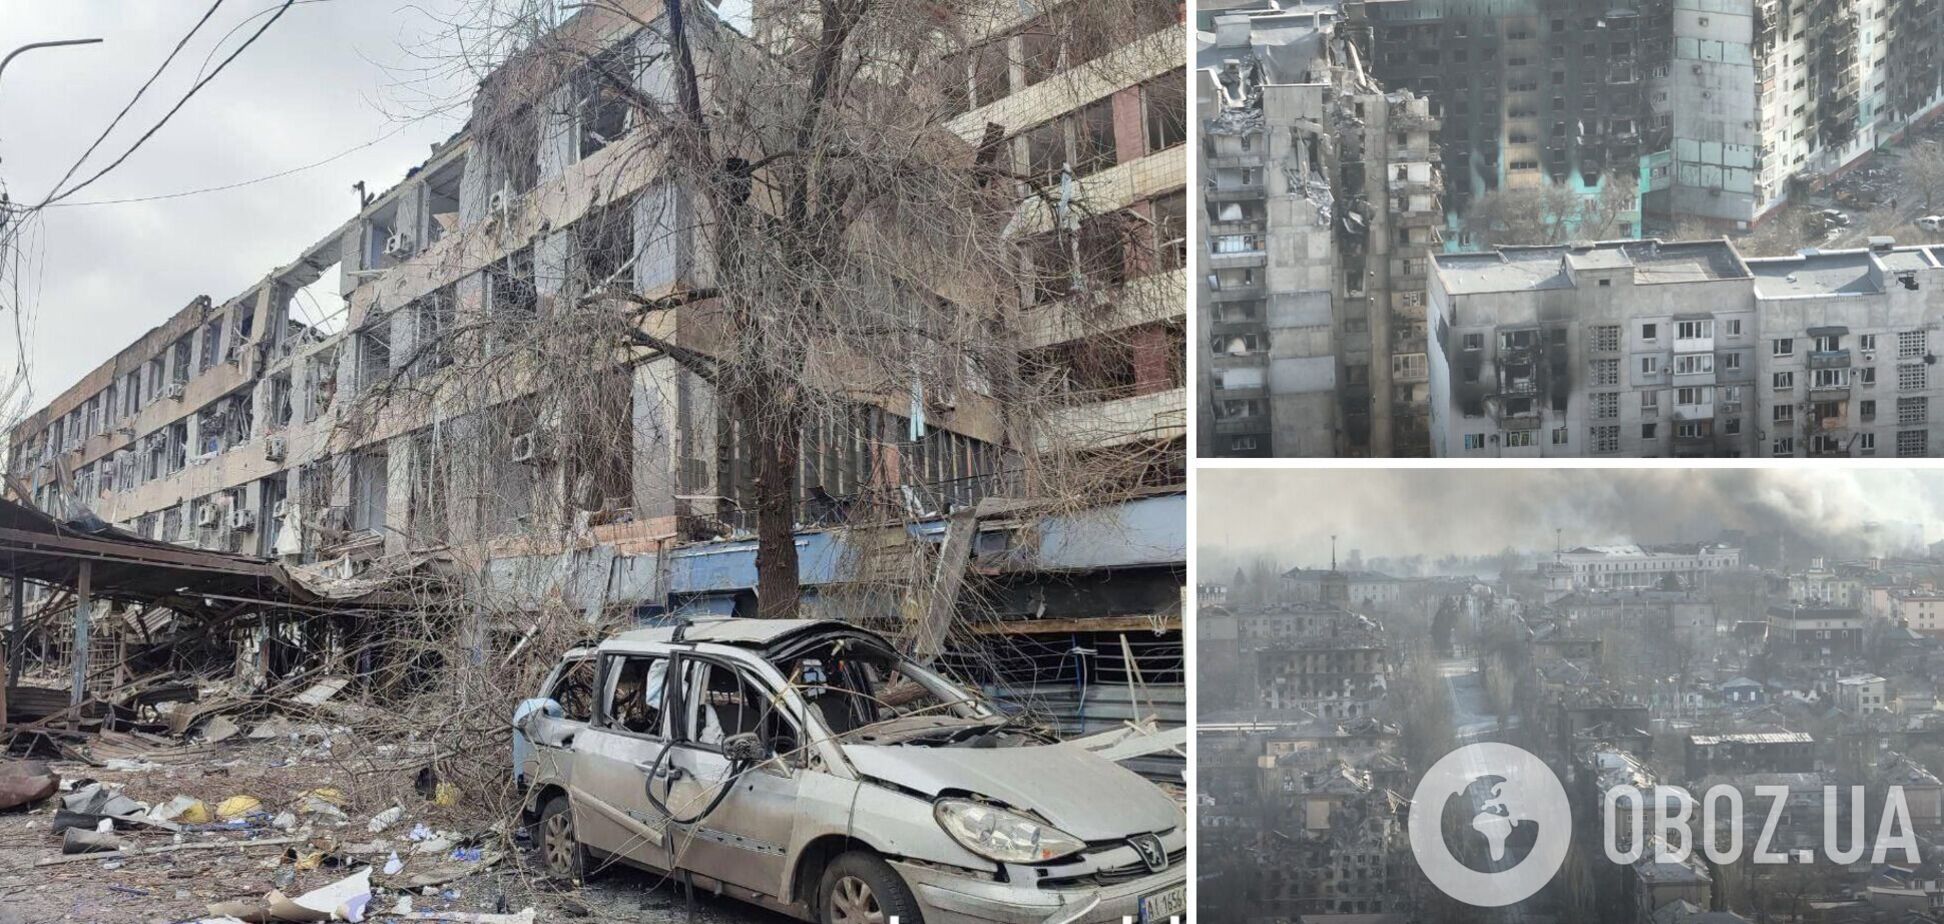 'Мы попали в ад': украинка рассказала, как оккупанты уничтожали Мариуполь и устраивали 'зачистки'